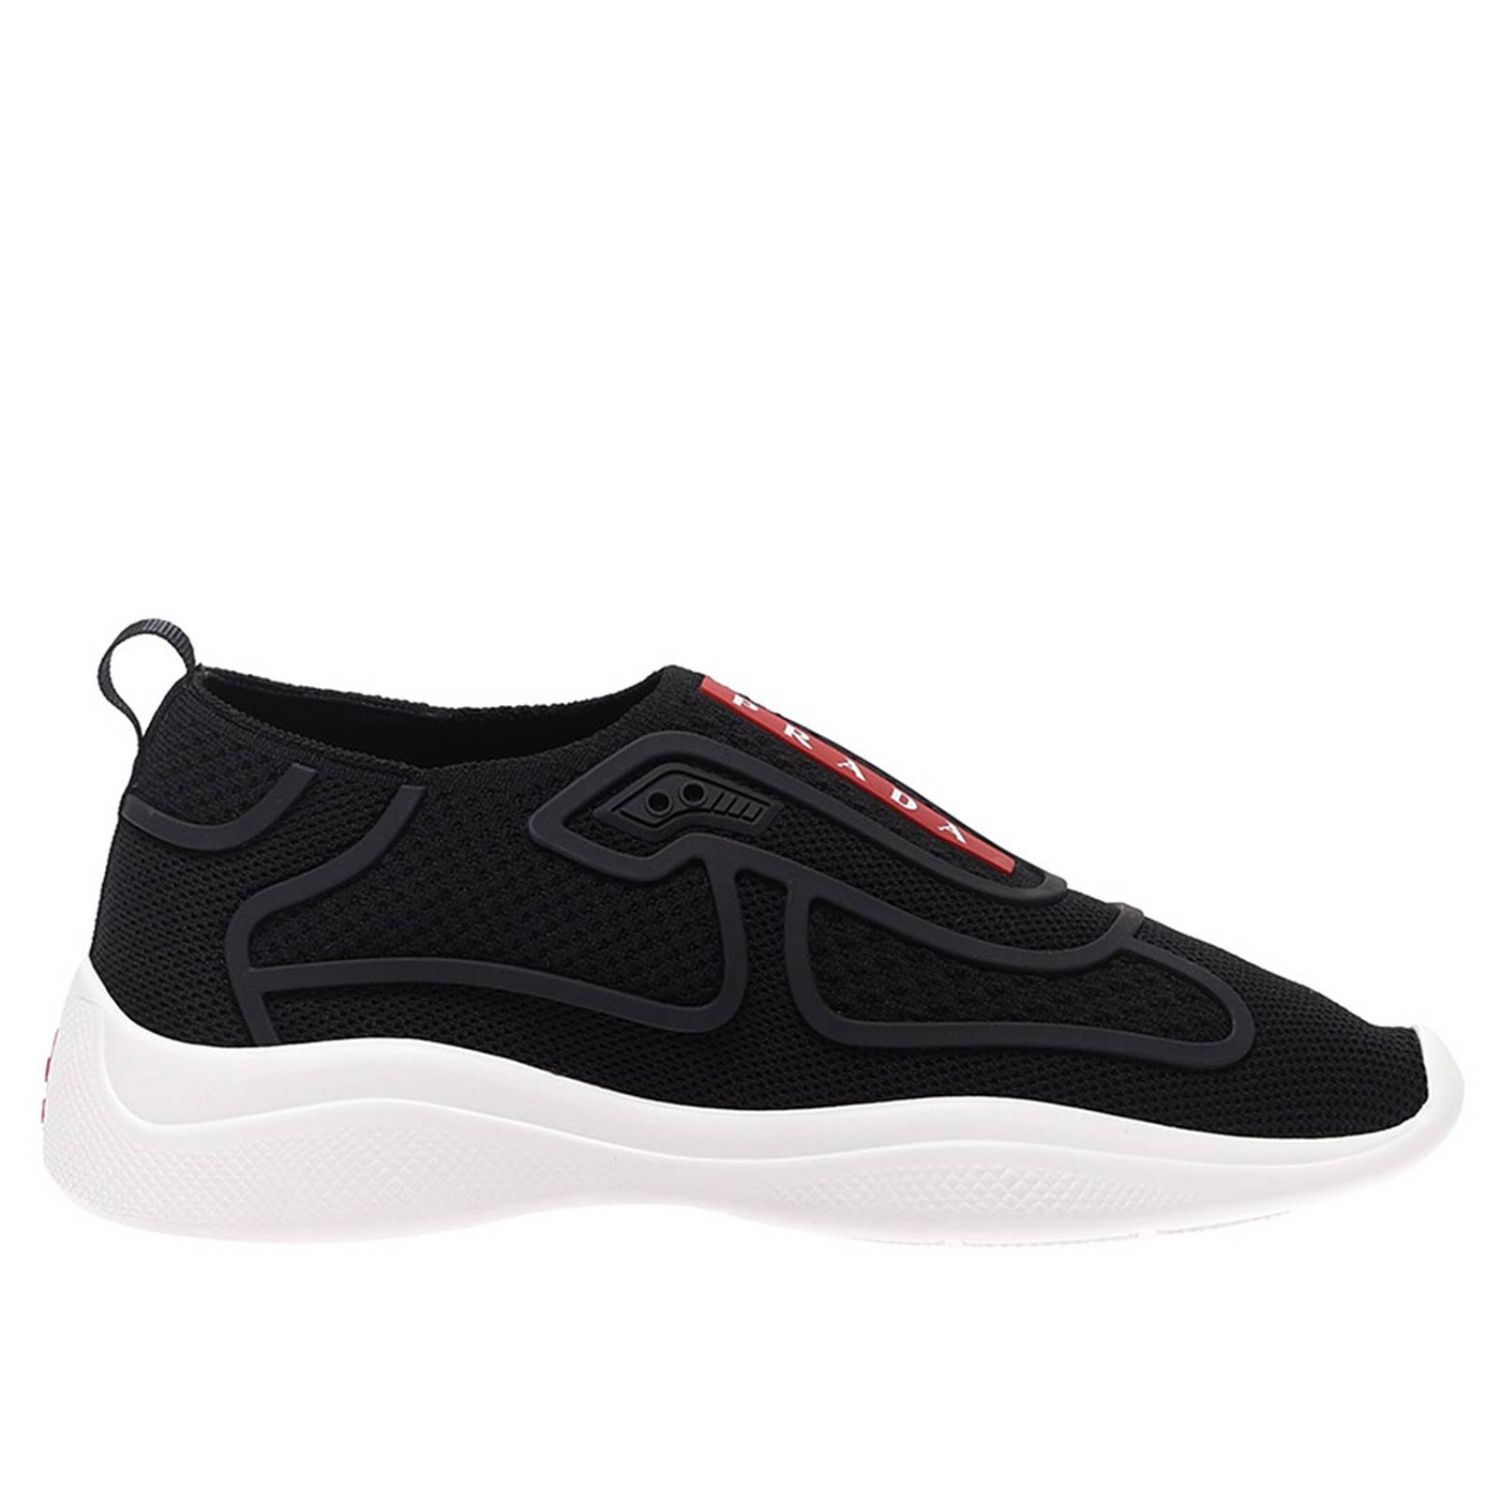 PRADA: Shoes women - Black | PRADA sneakers 3s6421 3kpl online at ...